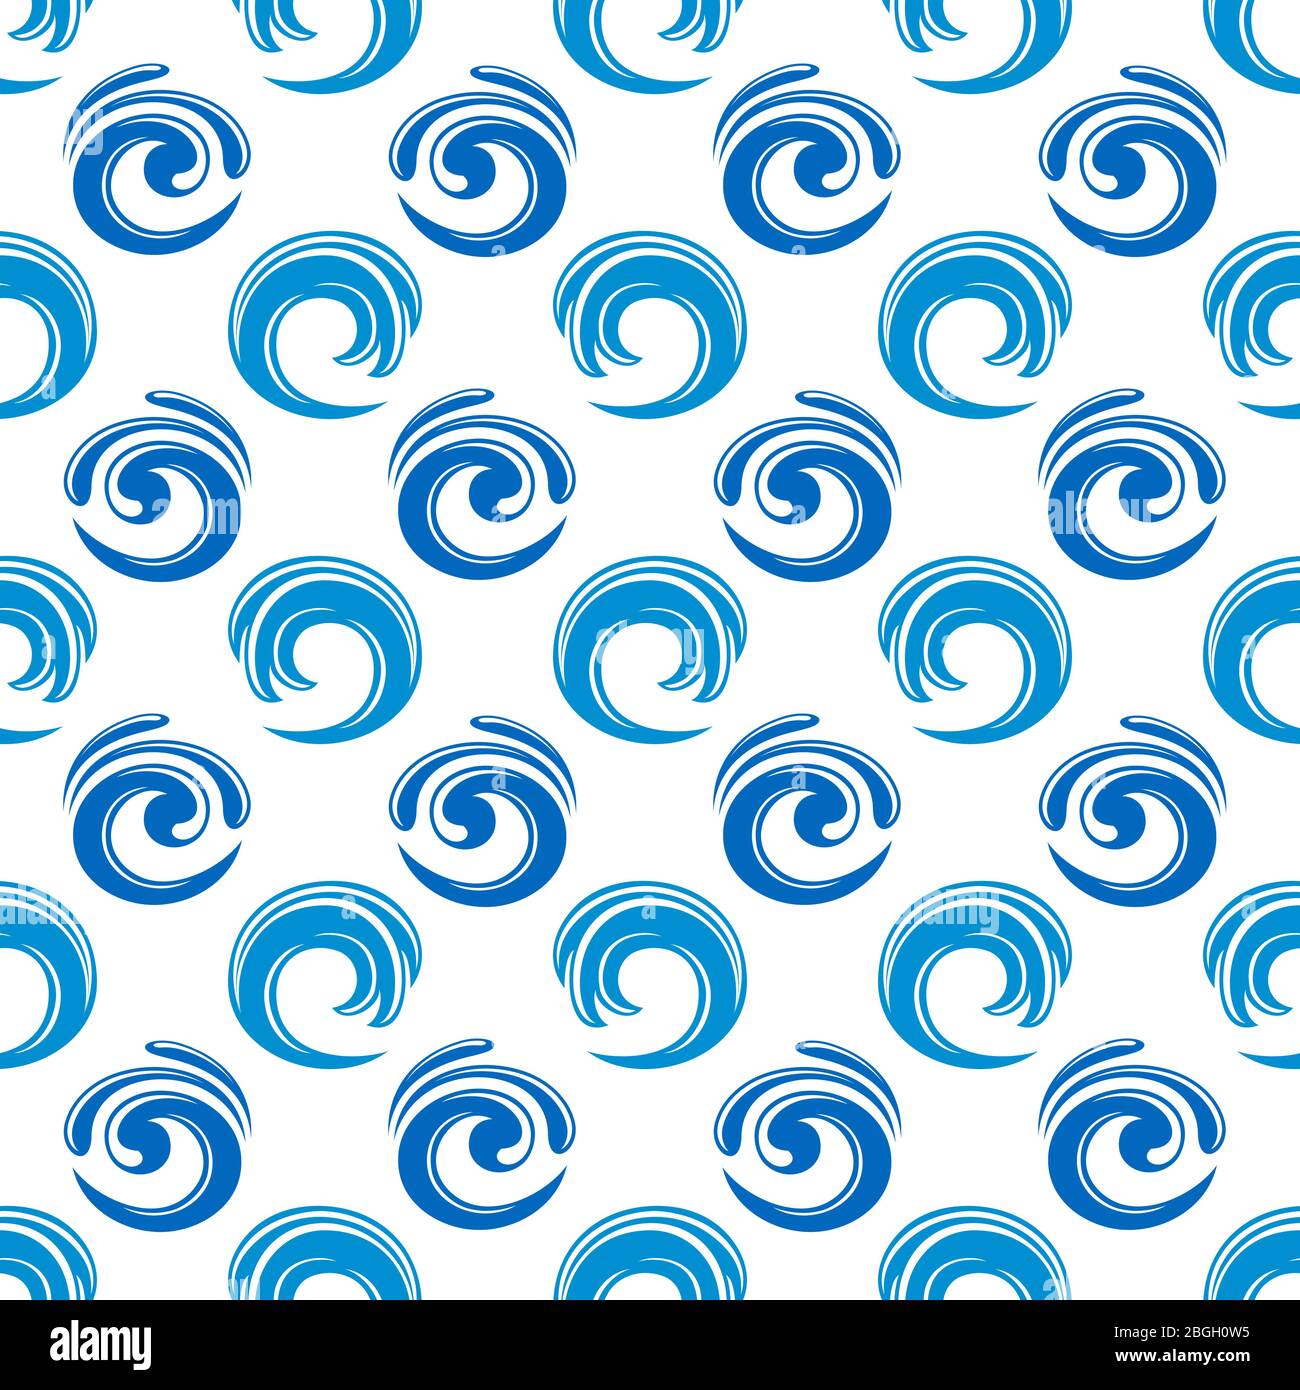 Abstraktes Muster mit blauen Wellen. Hintergrund Wasser. Vektorgrafik Stock Vektor